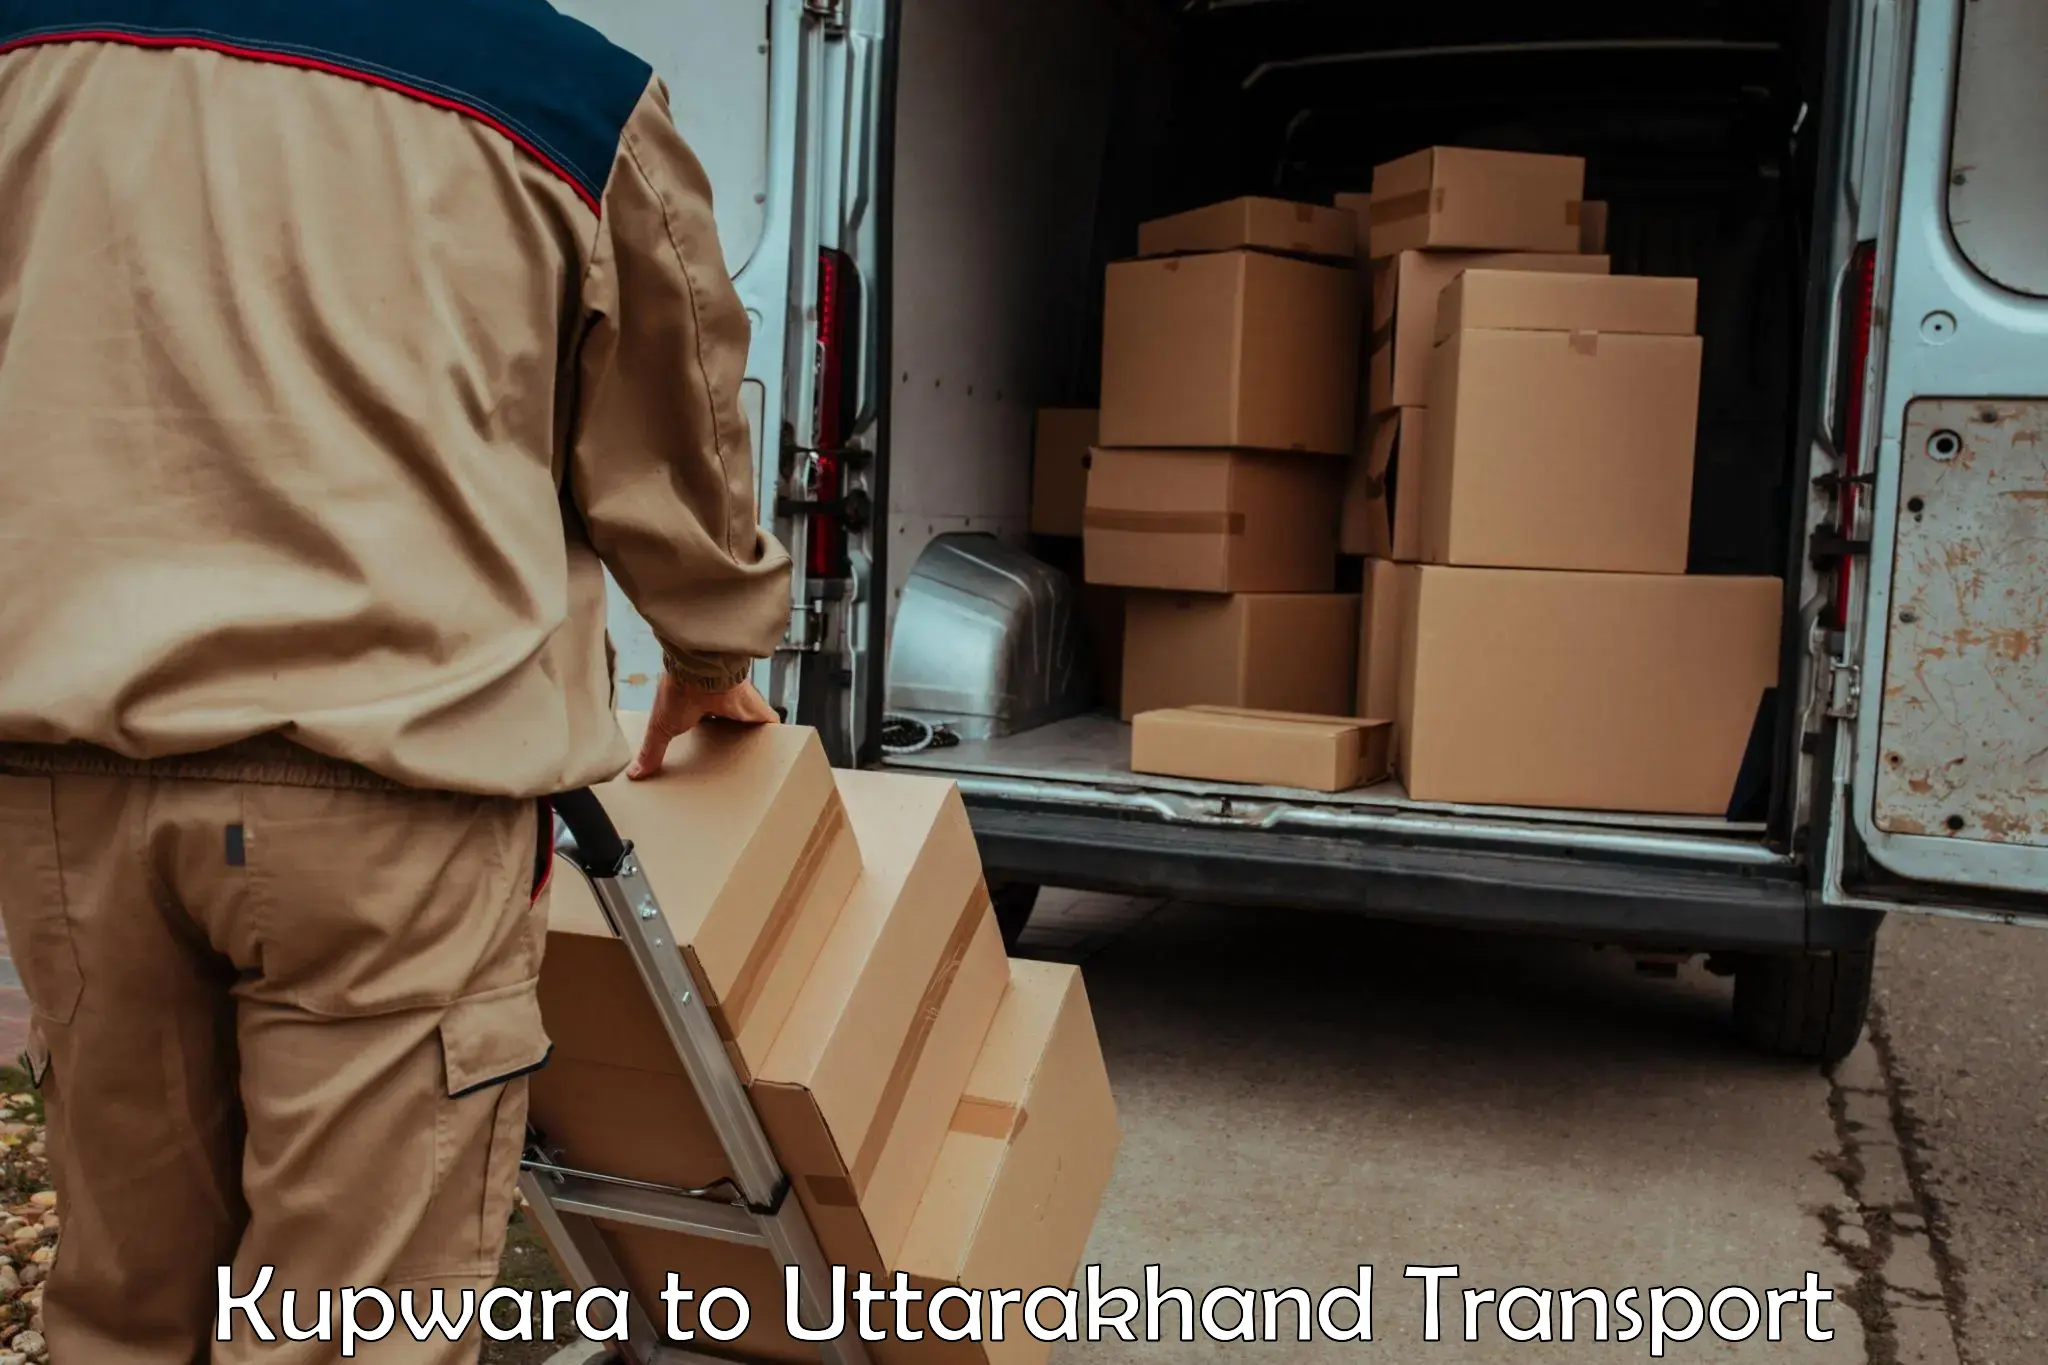 Part load transport service in India Kupwara to Bageshwar